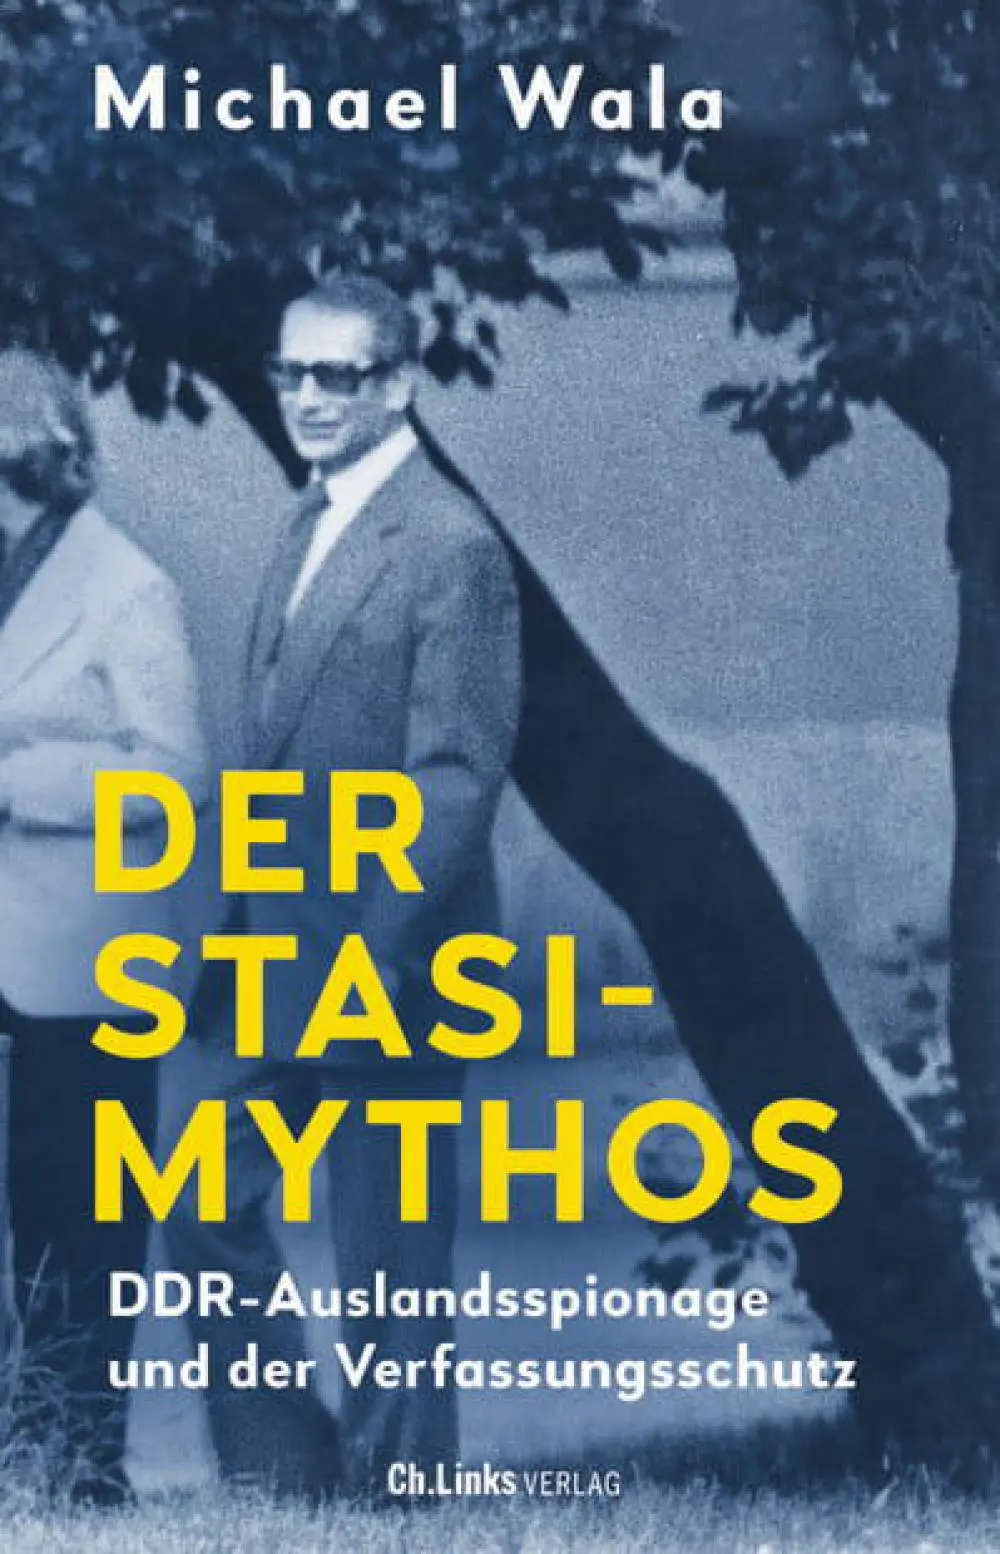 Cover von "Der Stasi-Mythos" von Michael Wala